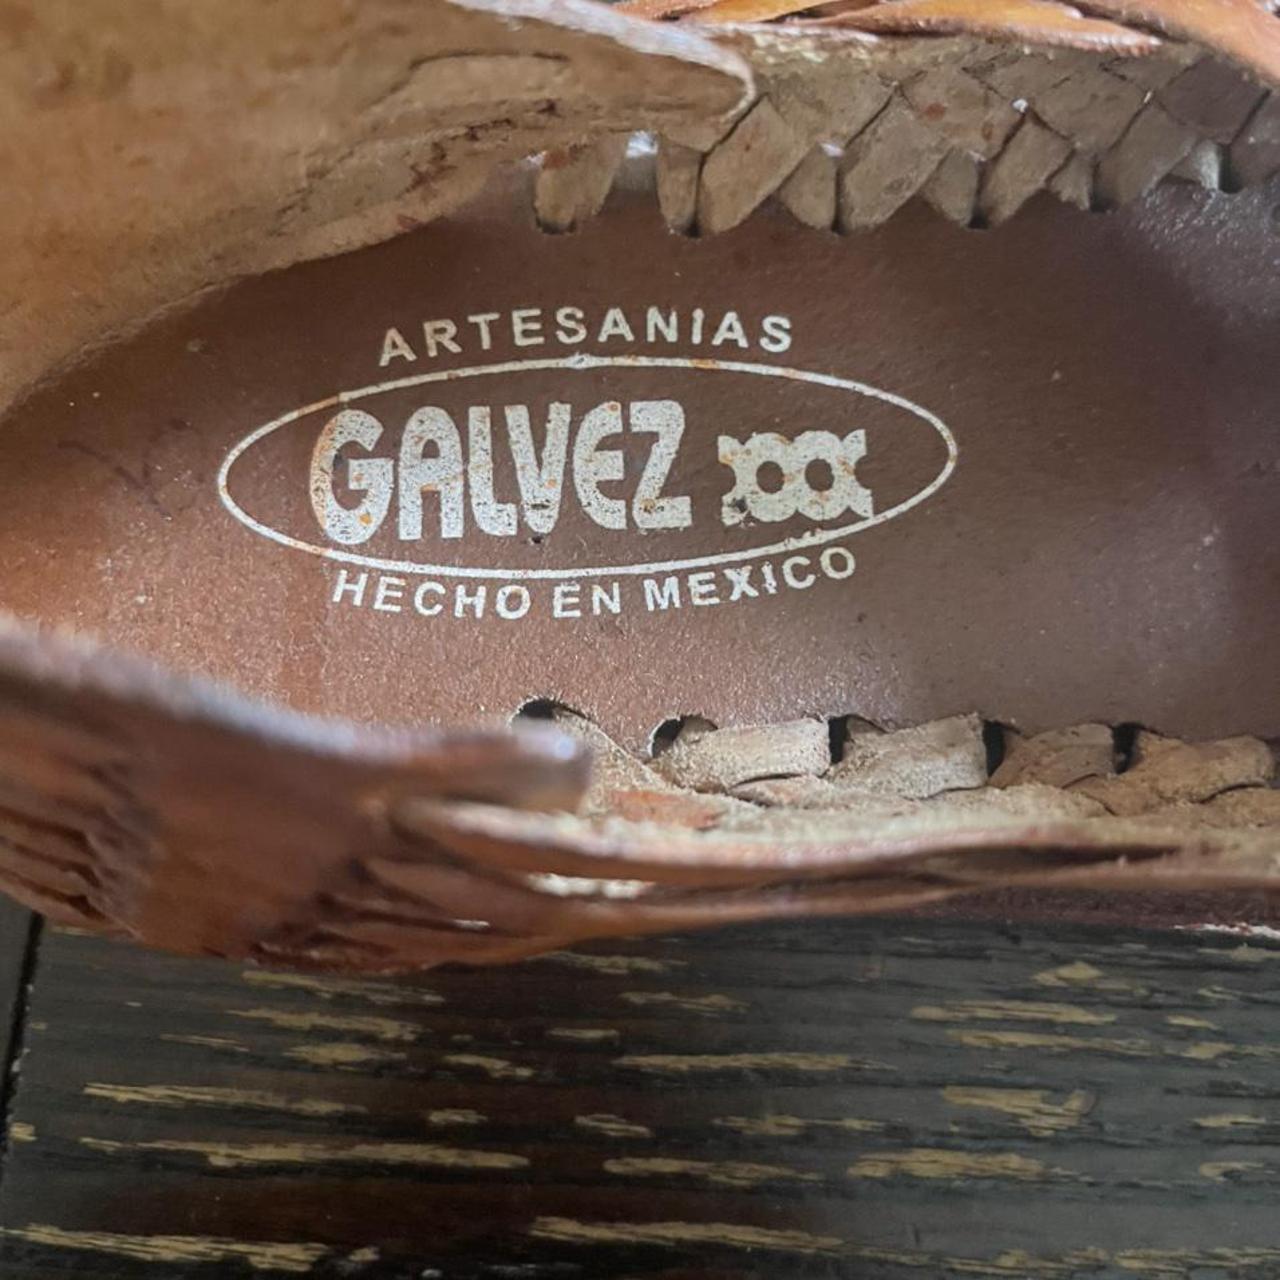 Product Image 3 - Galvez leather sun shoes sandals.